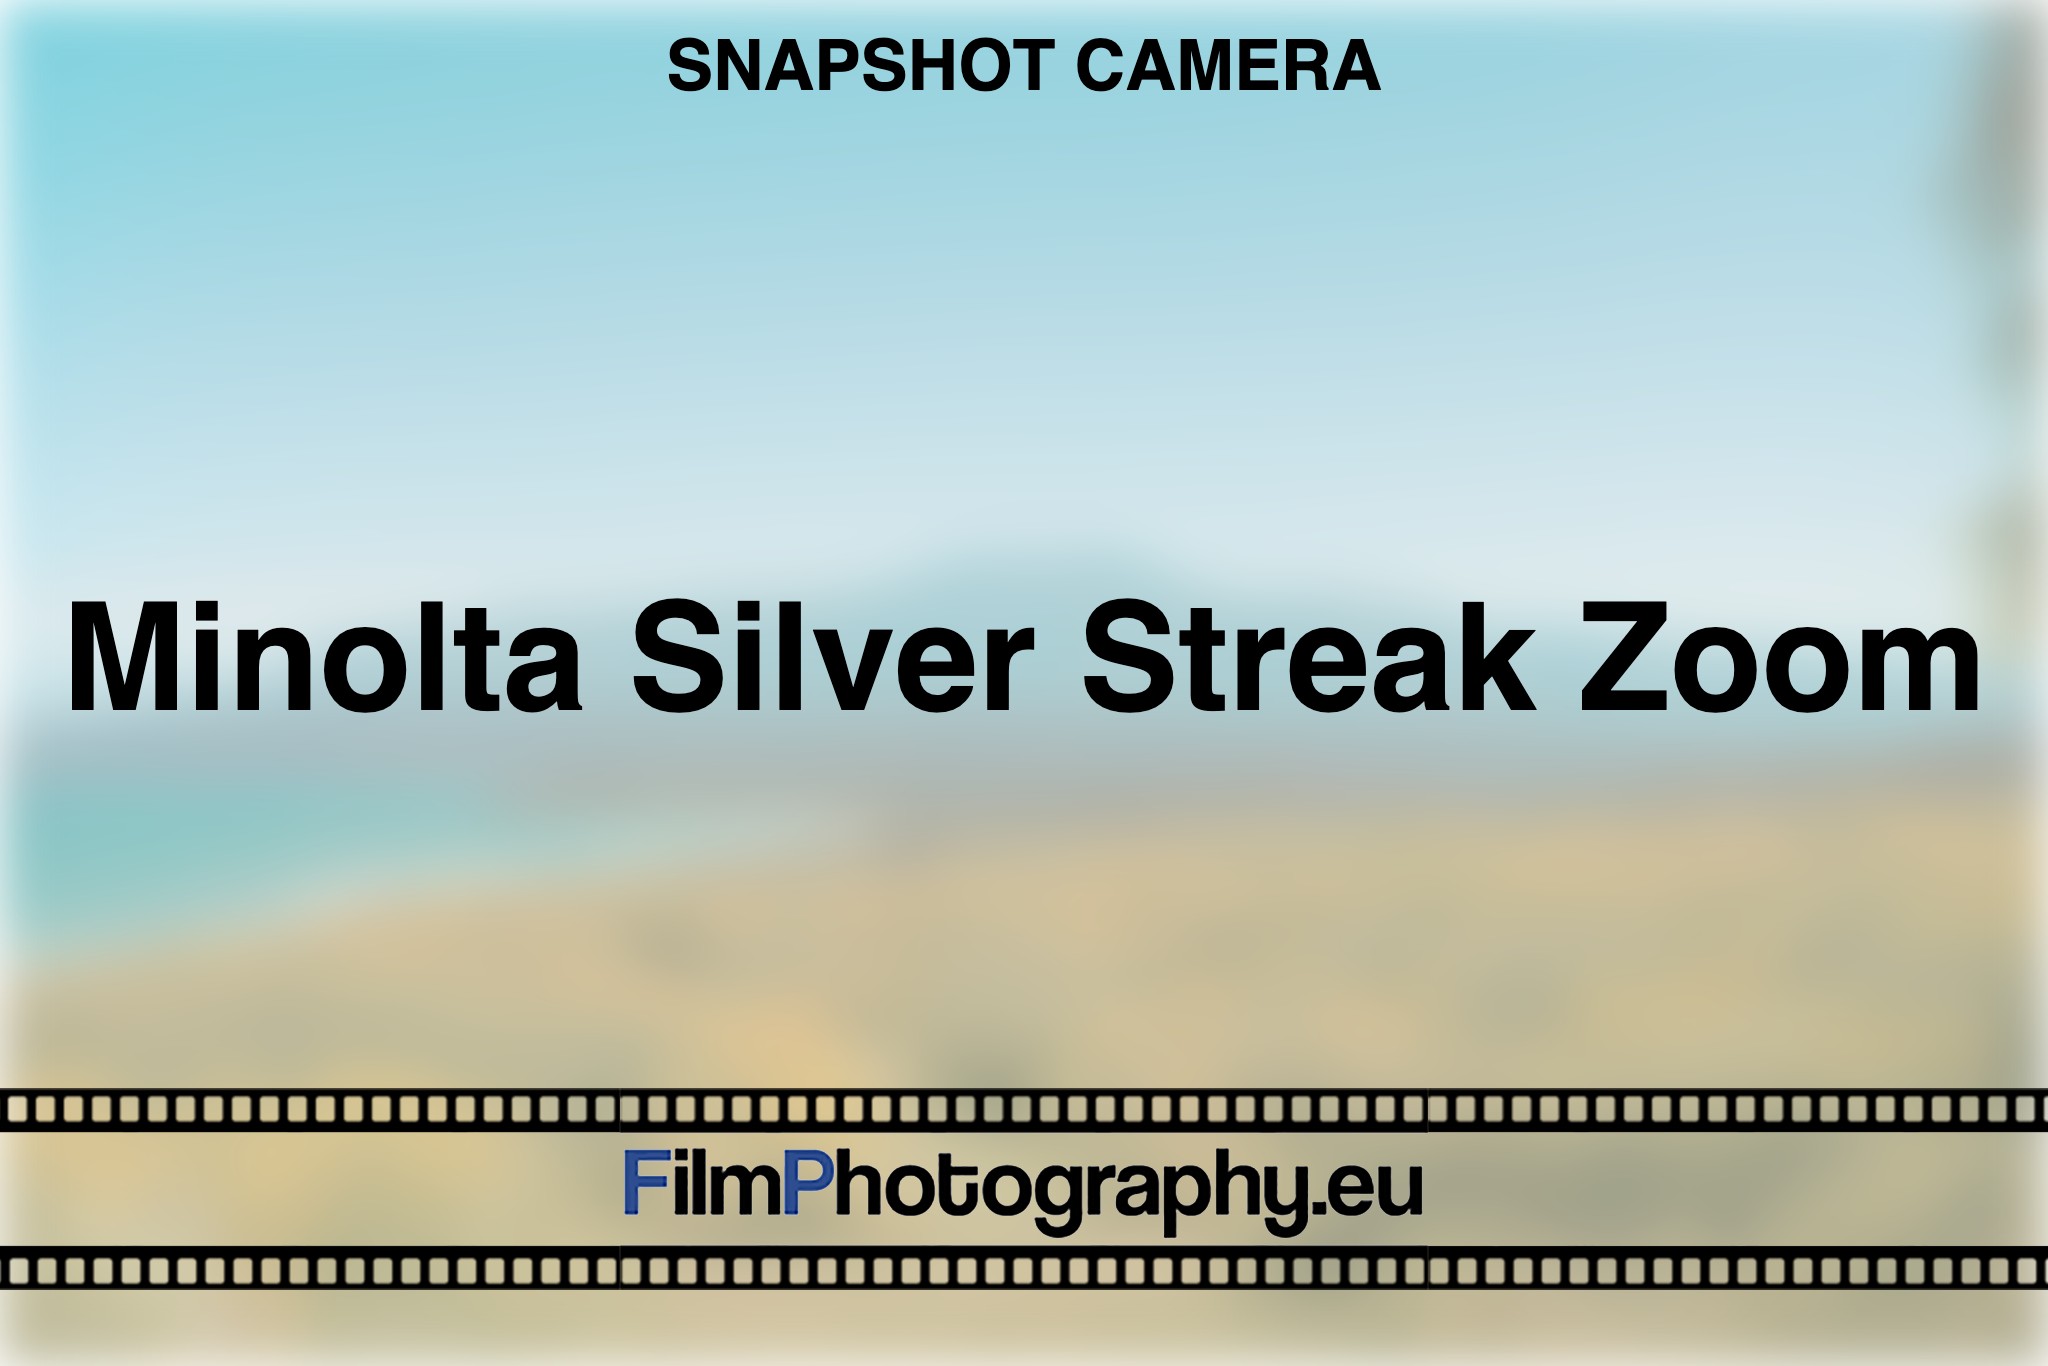 minolta-silver-streak-zoom-snapshot-camera-bnv